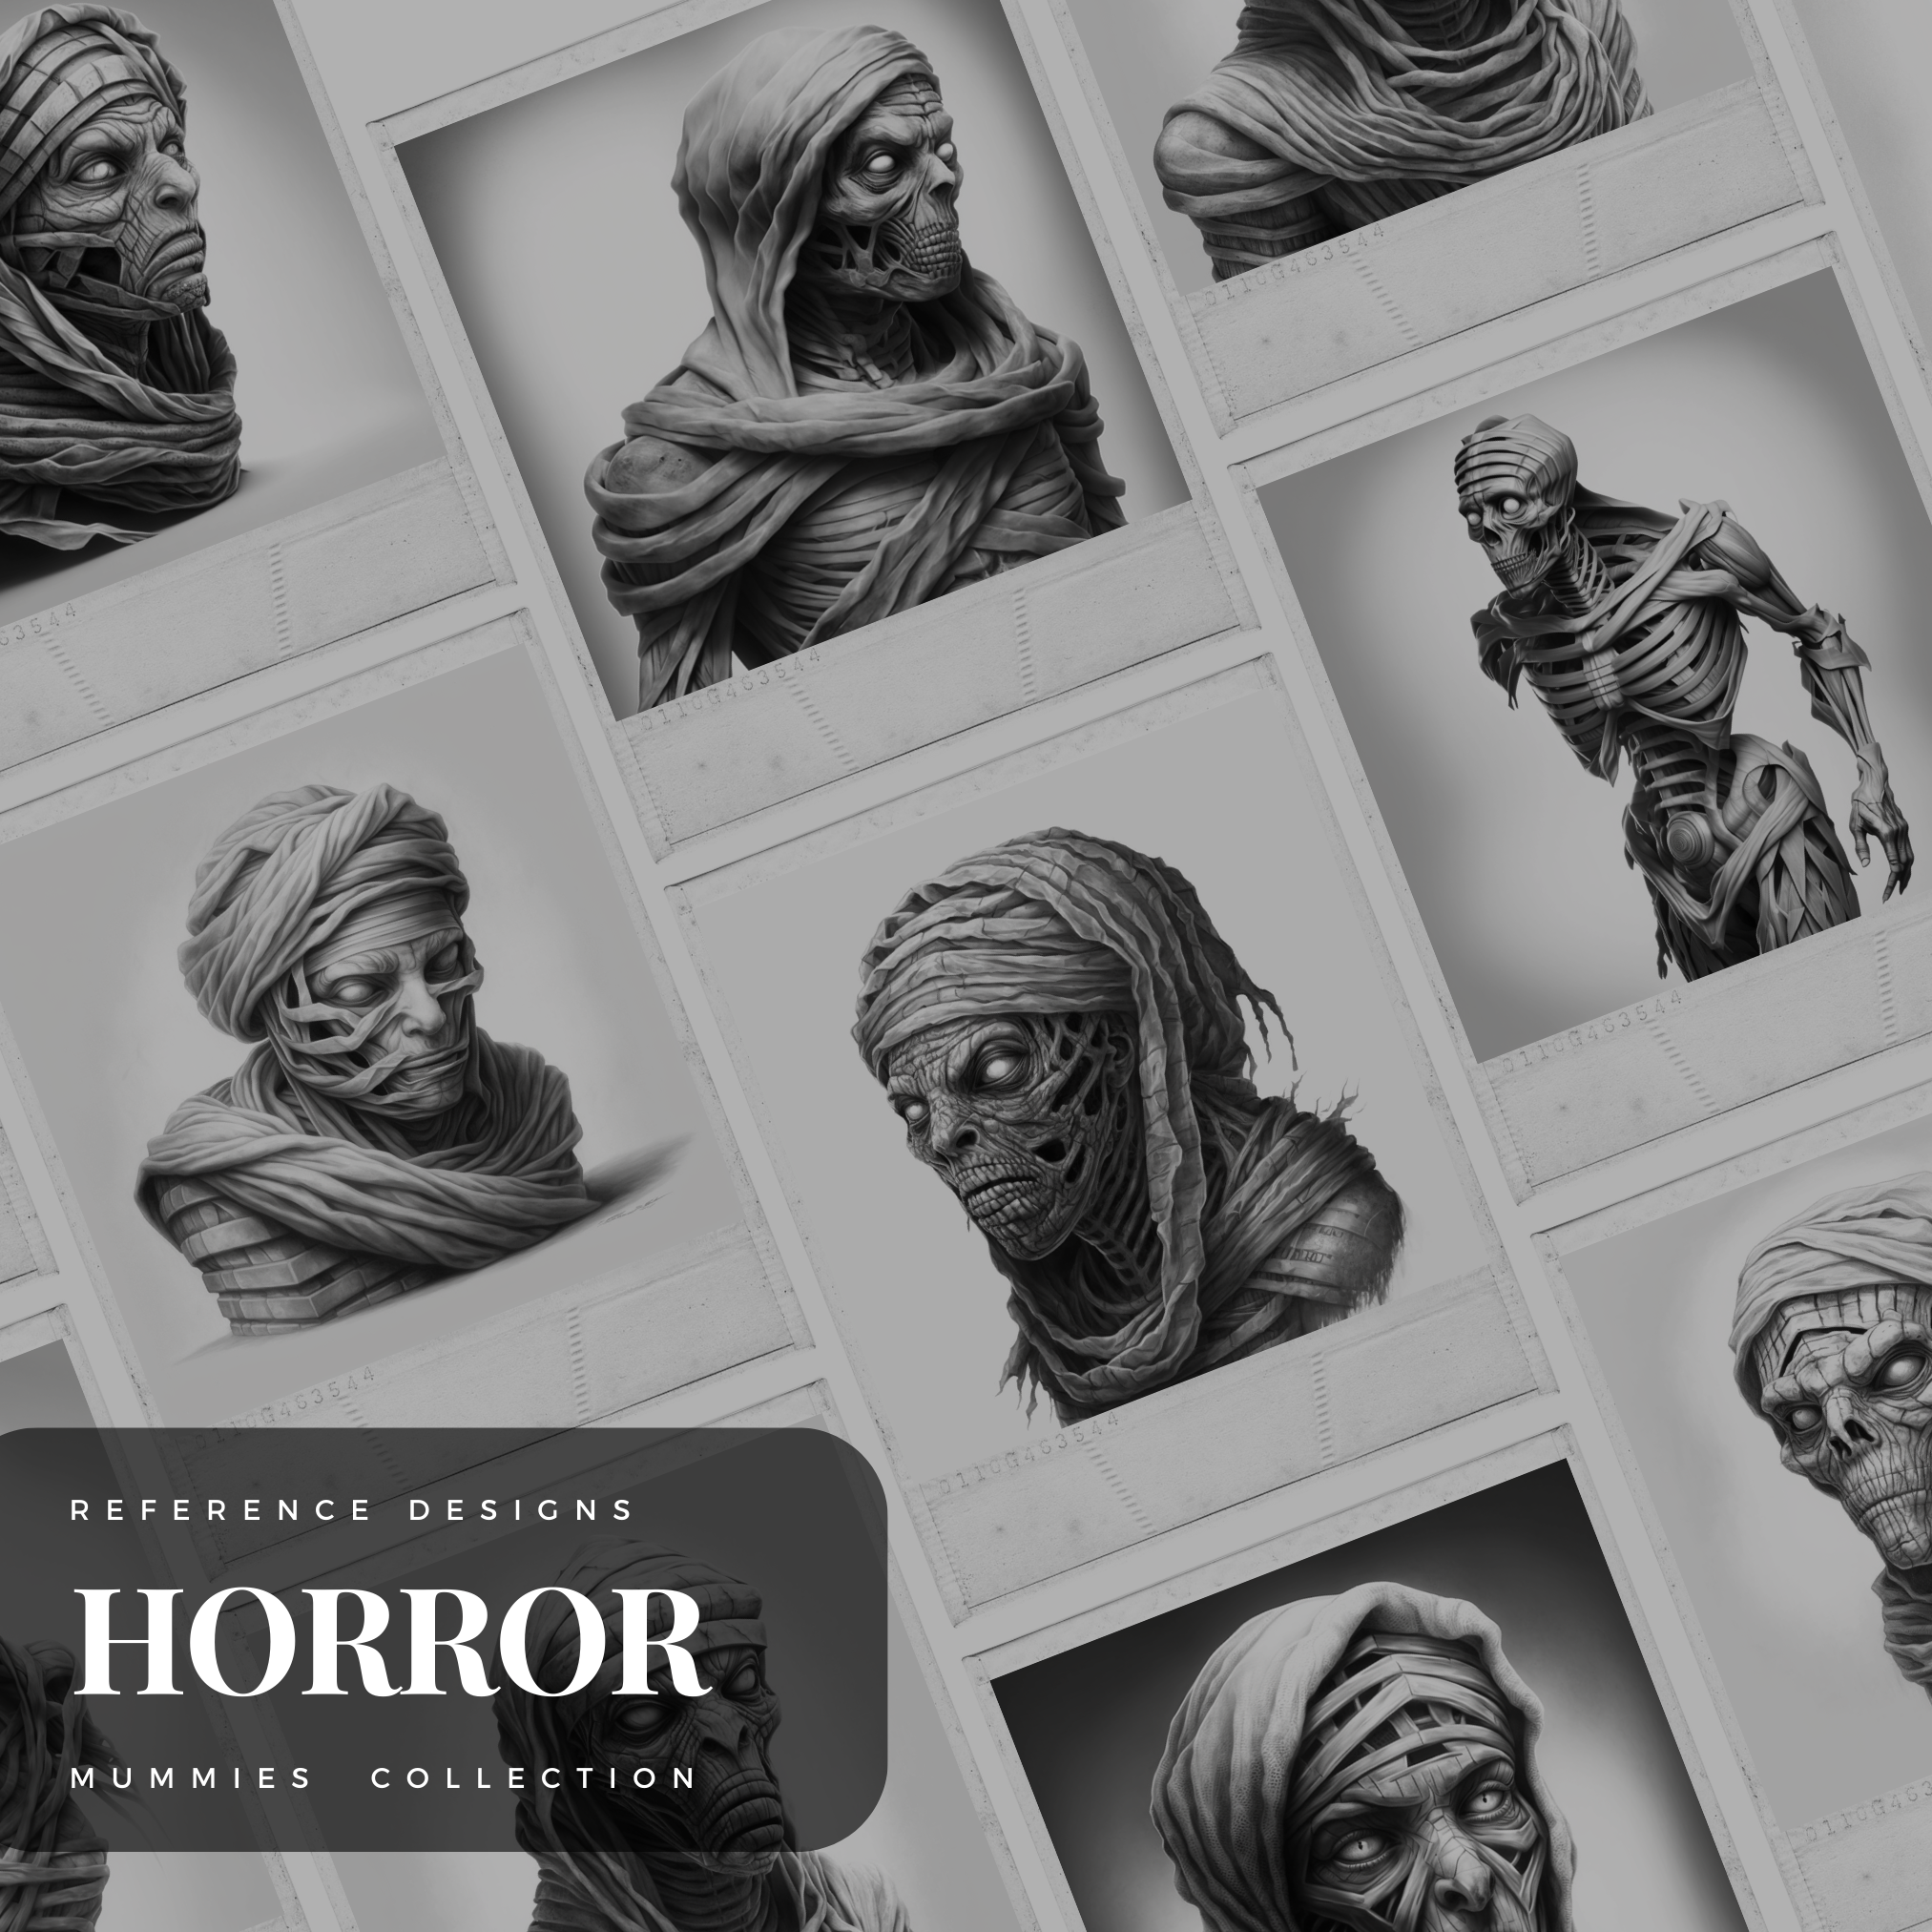 Digitale Horror-Designsammlung „Mumien“: 50 Procreate- und Skizzenbuchbilder